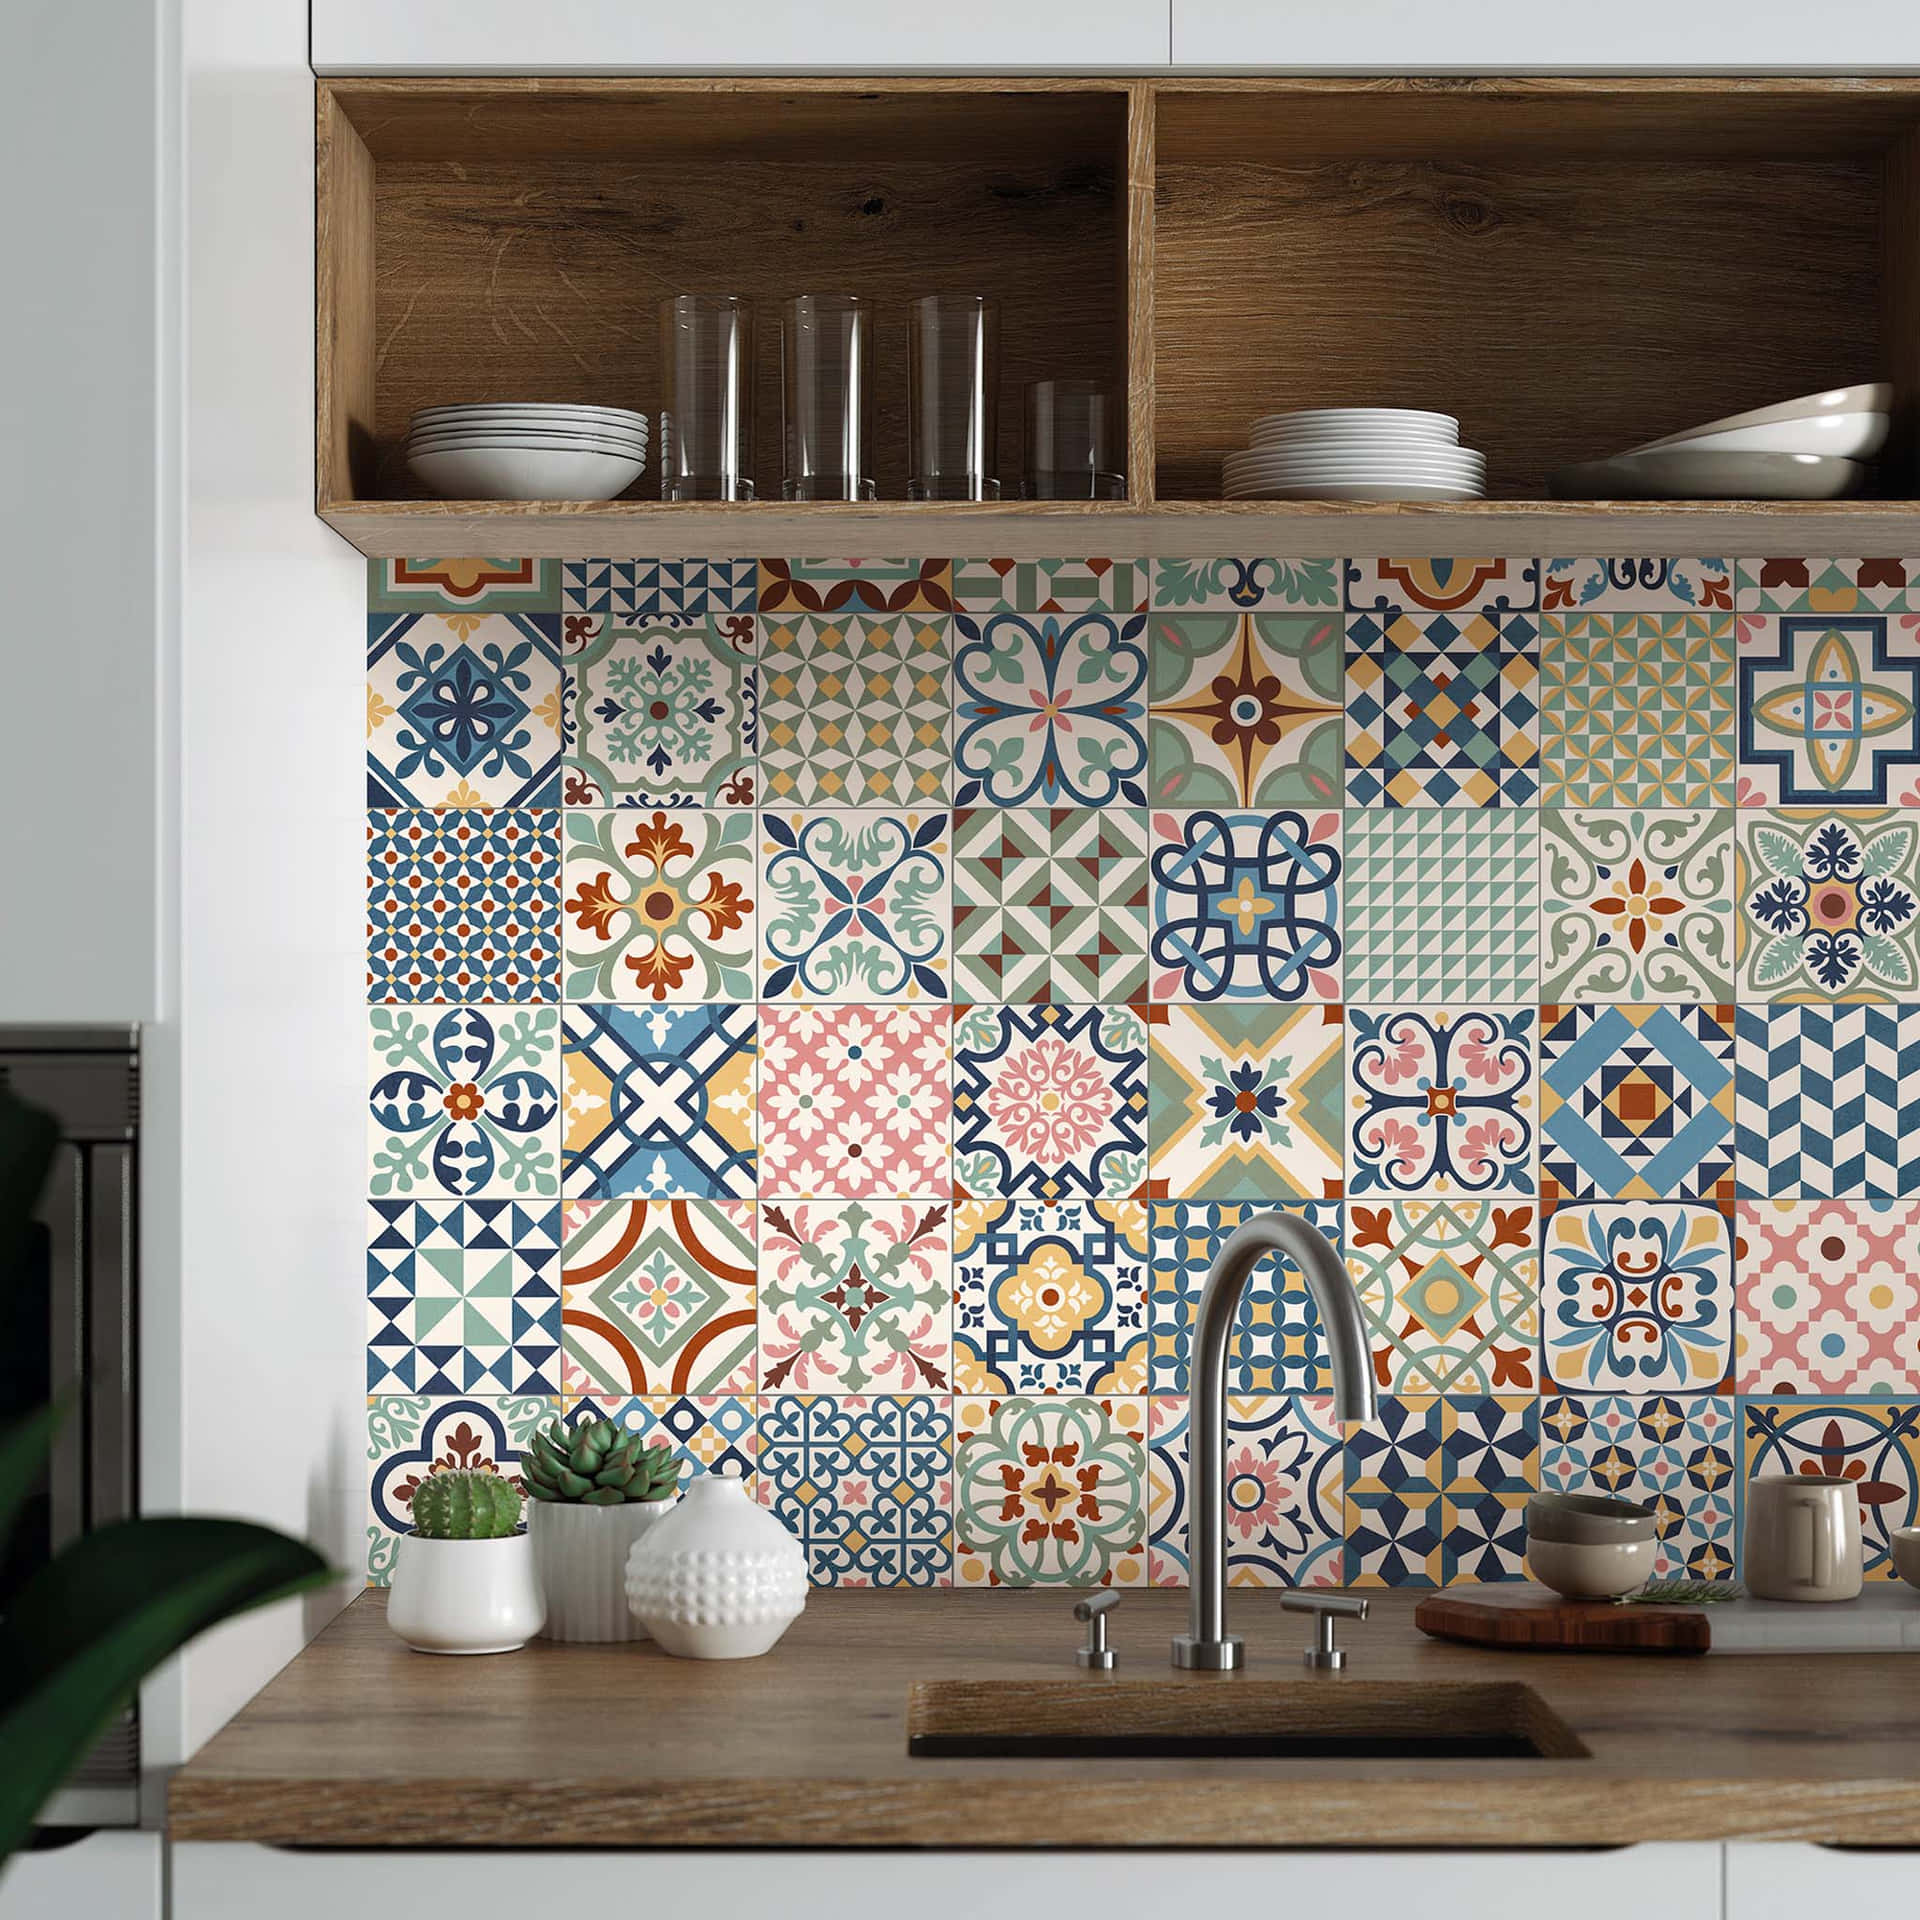 A Kitchen With Colorful Tiled Backsplash